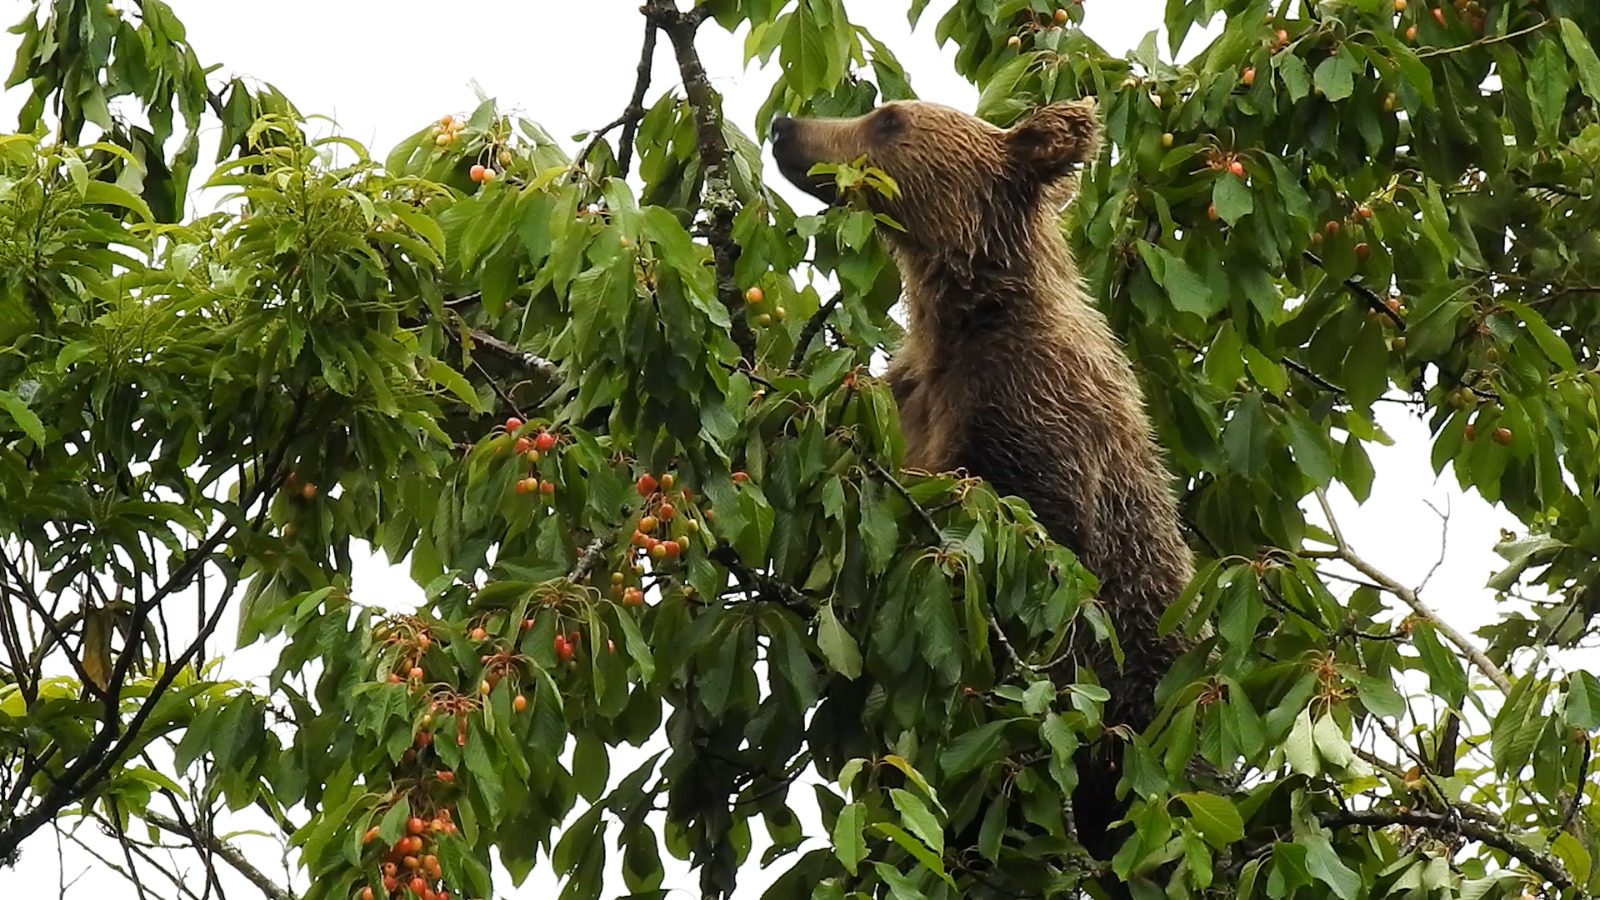 cambio climático sobre el cerezo silvestre y sus efectos en el oso pardo